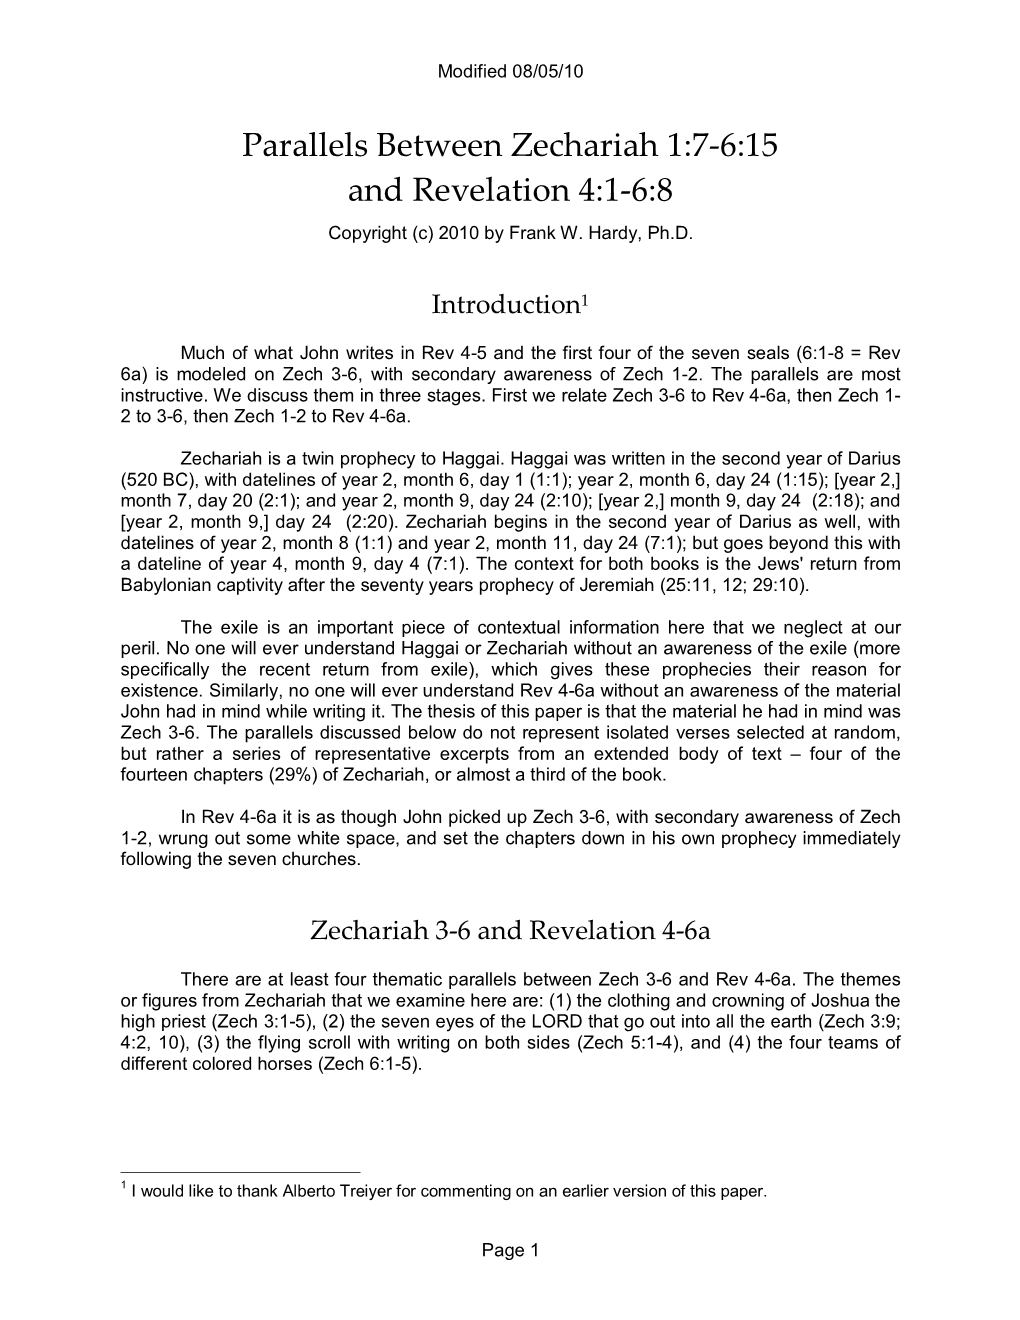 Parallels Between Zechariah 1:7-6:15 and Revelation 4:1-6:8